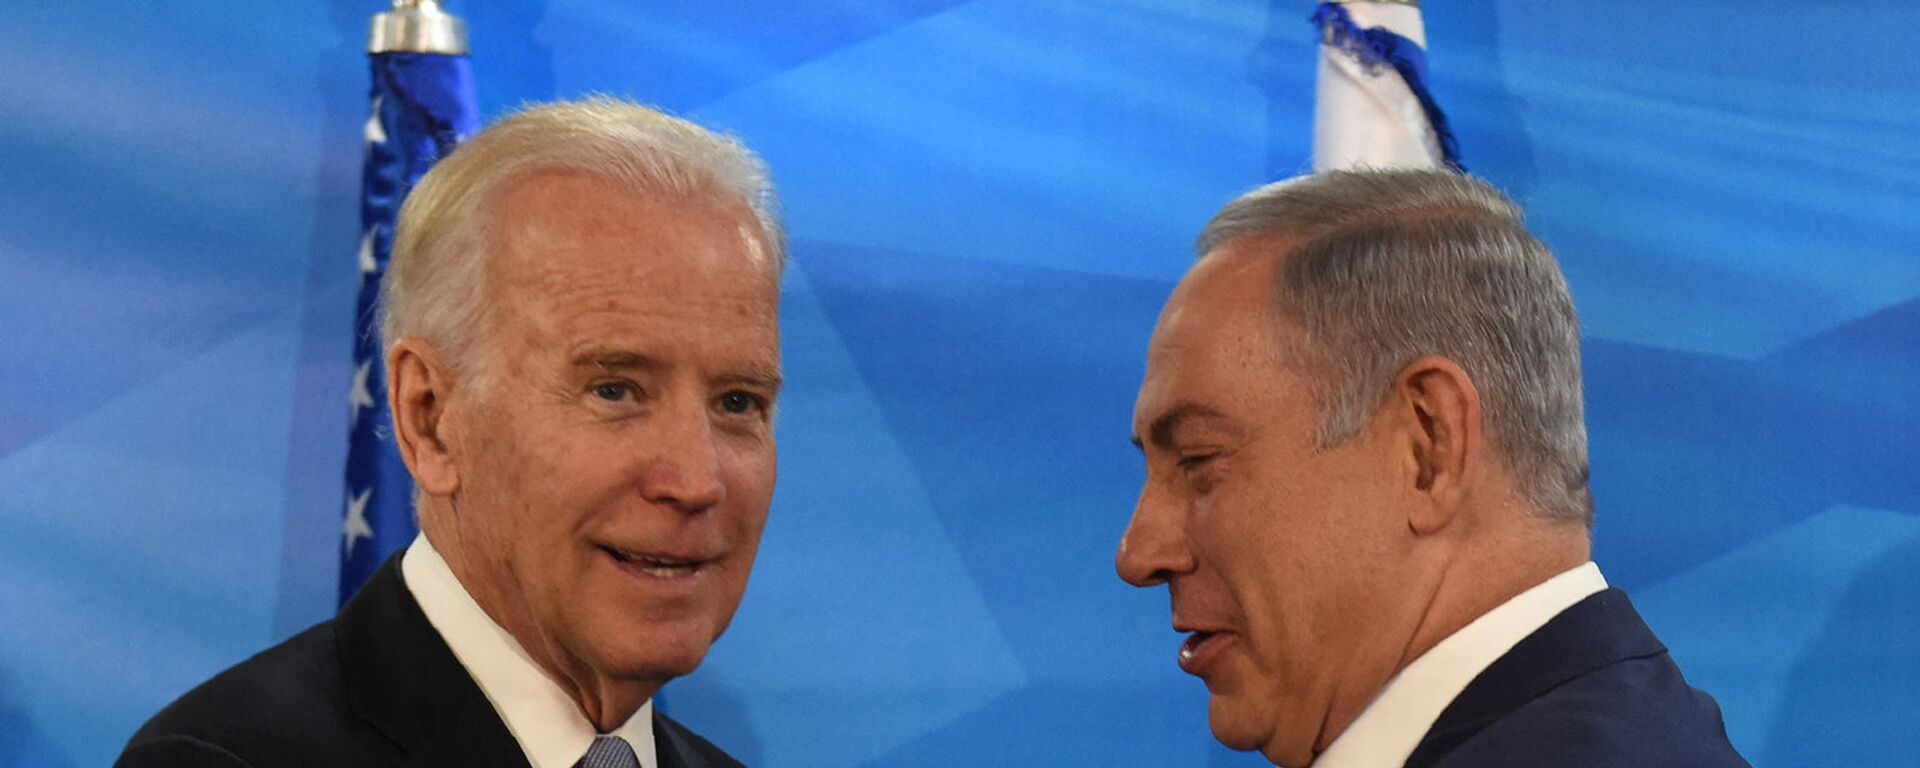 Вице-президент США Джо Байден и премьер-министр Израиля Биньямин Нетаньяху пожимают друг другу руки (9 марта 2016).  - Sputnik Արմենիա, 1920, 12.05.2021